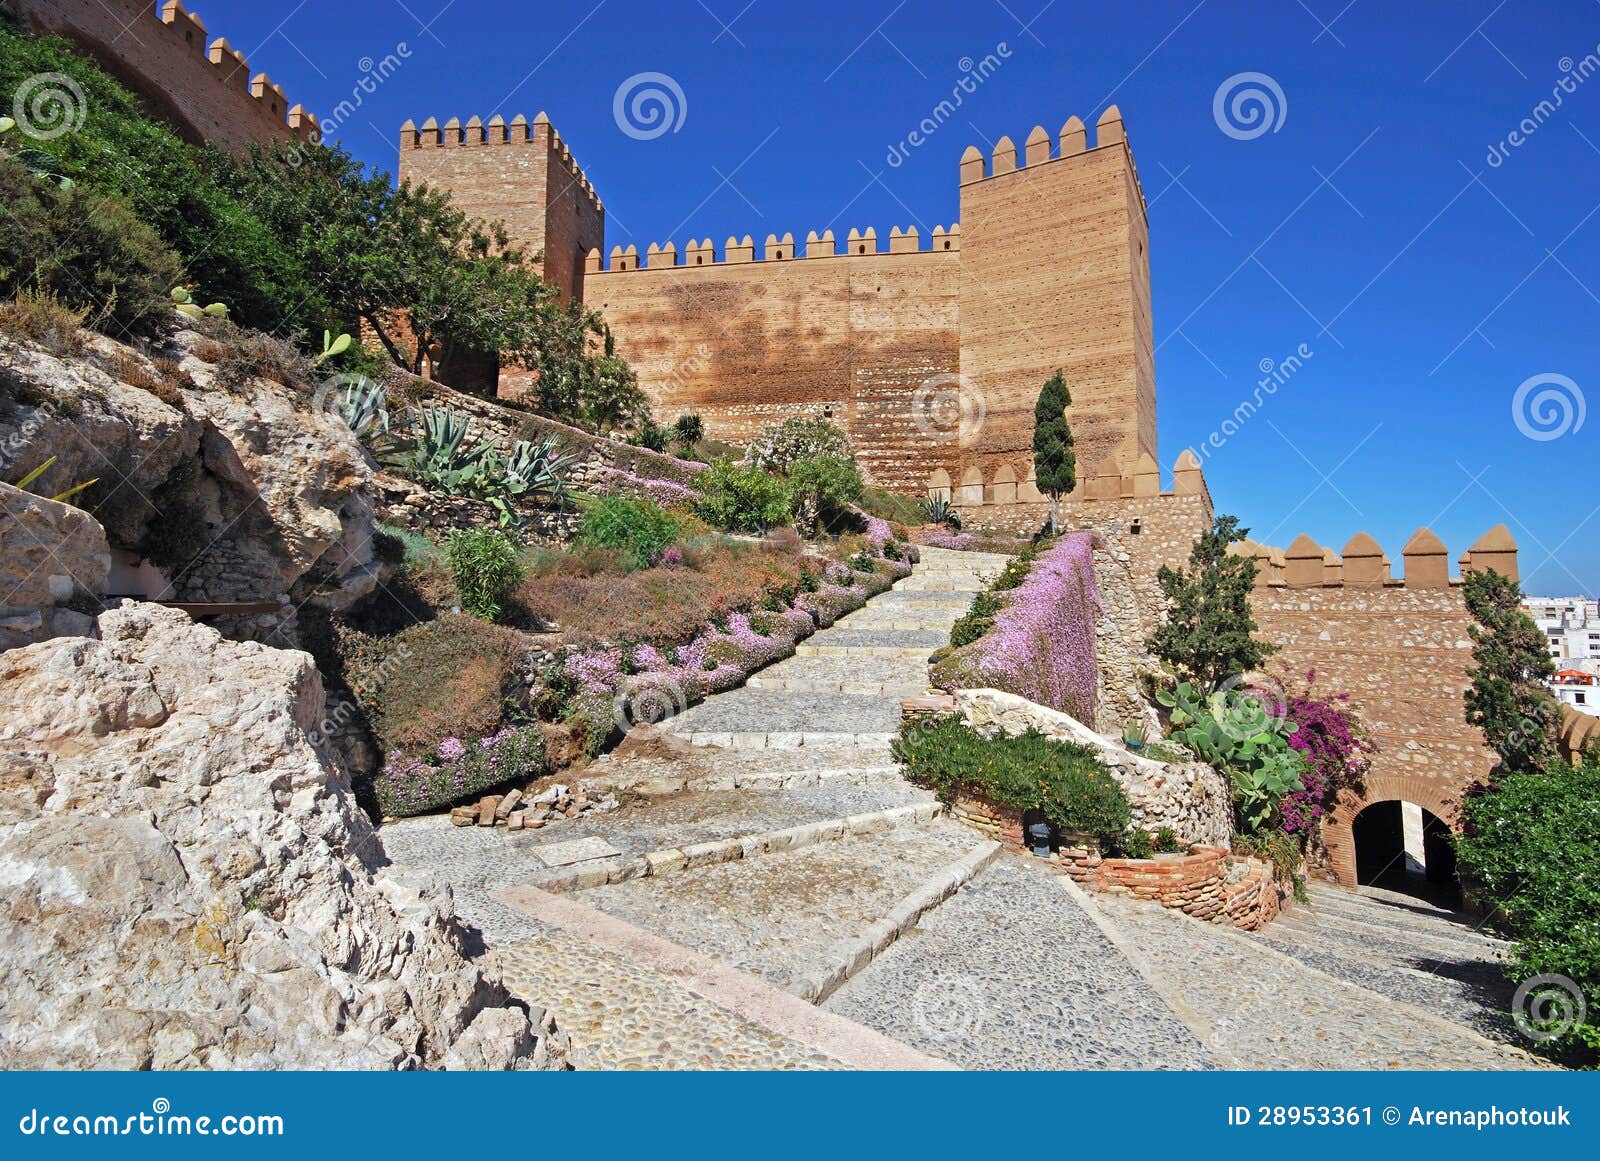 Замок Moorish, Альмерия, Андалусия, Испания. Взгляд замка Moorish и садов, Альмерии, Косты Альмерии, провинции Альмерии, Андалусии, Испании, Западной Европы.